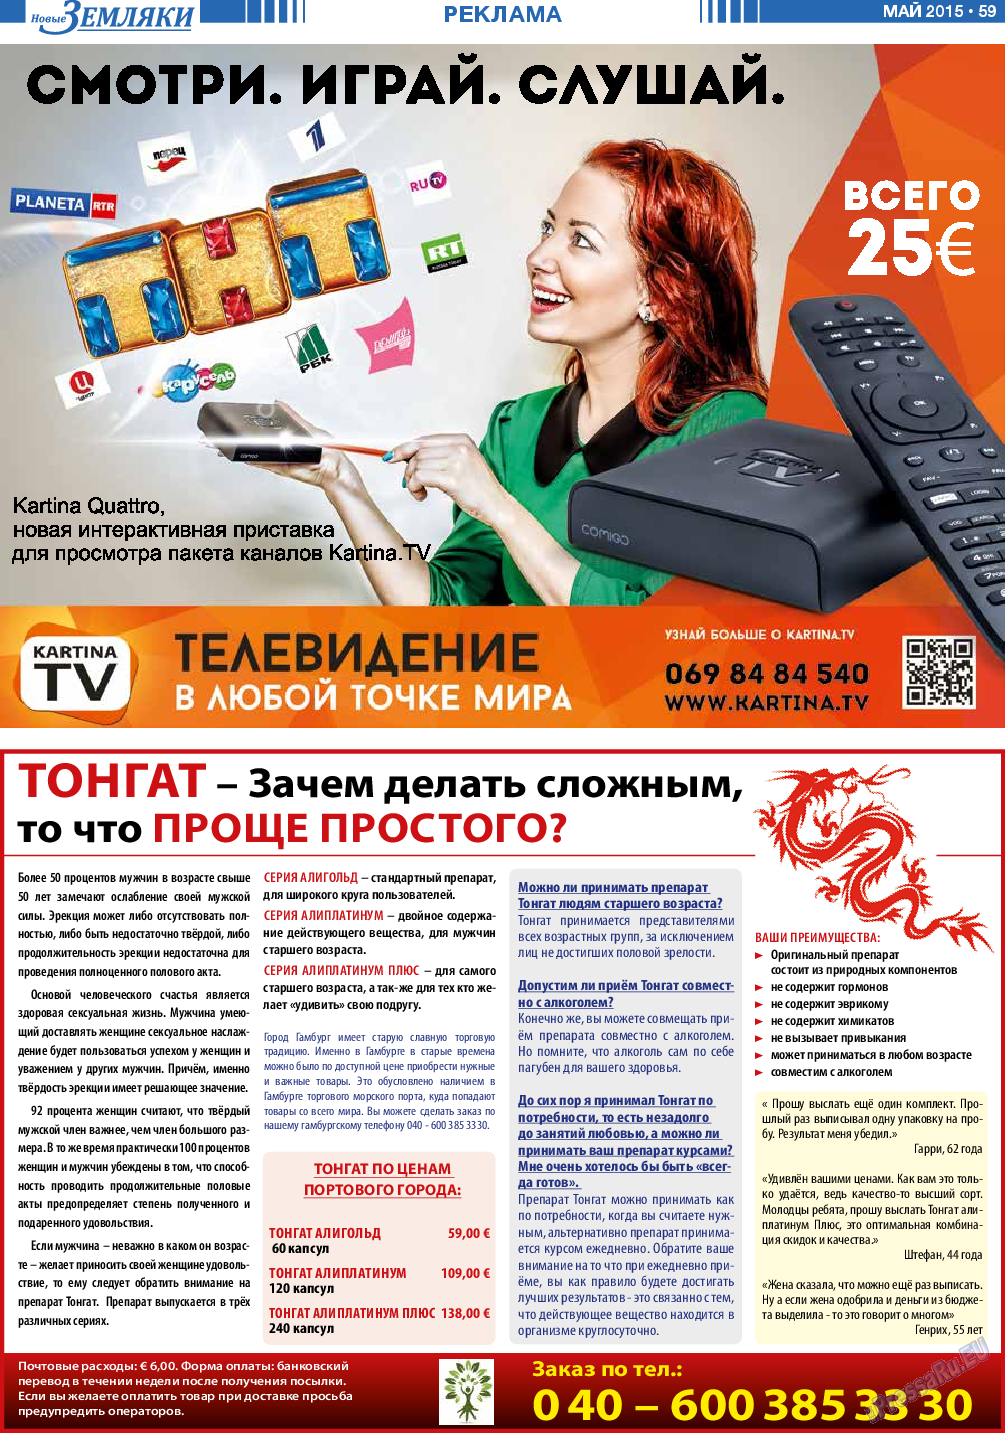 Новые Земляки, газета. 2015 №5 стр.59